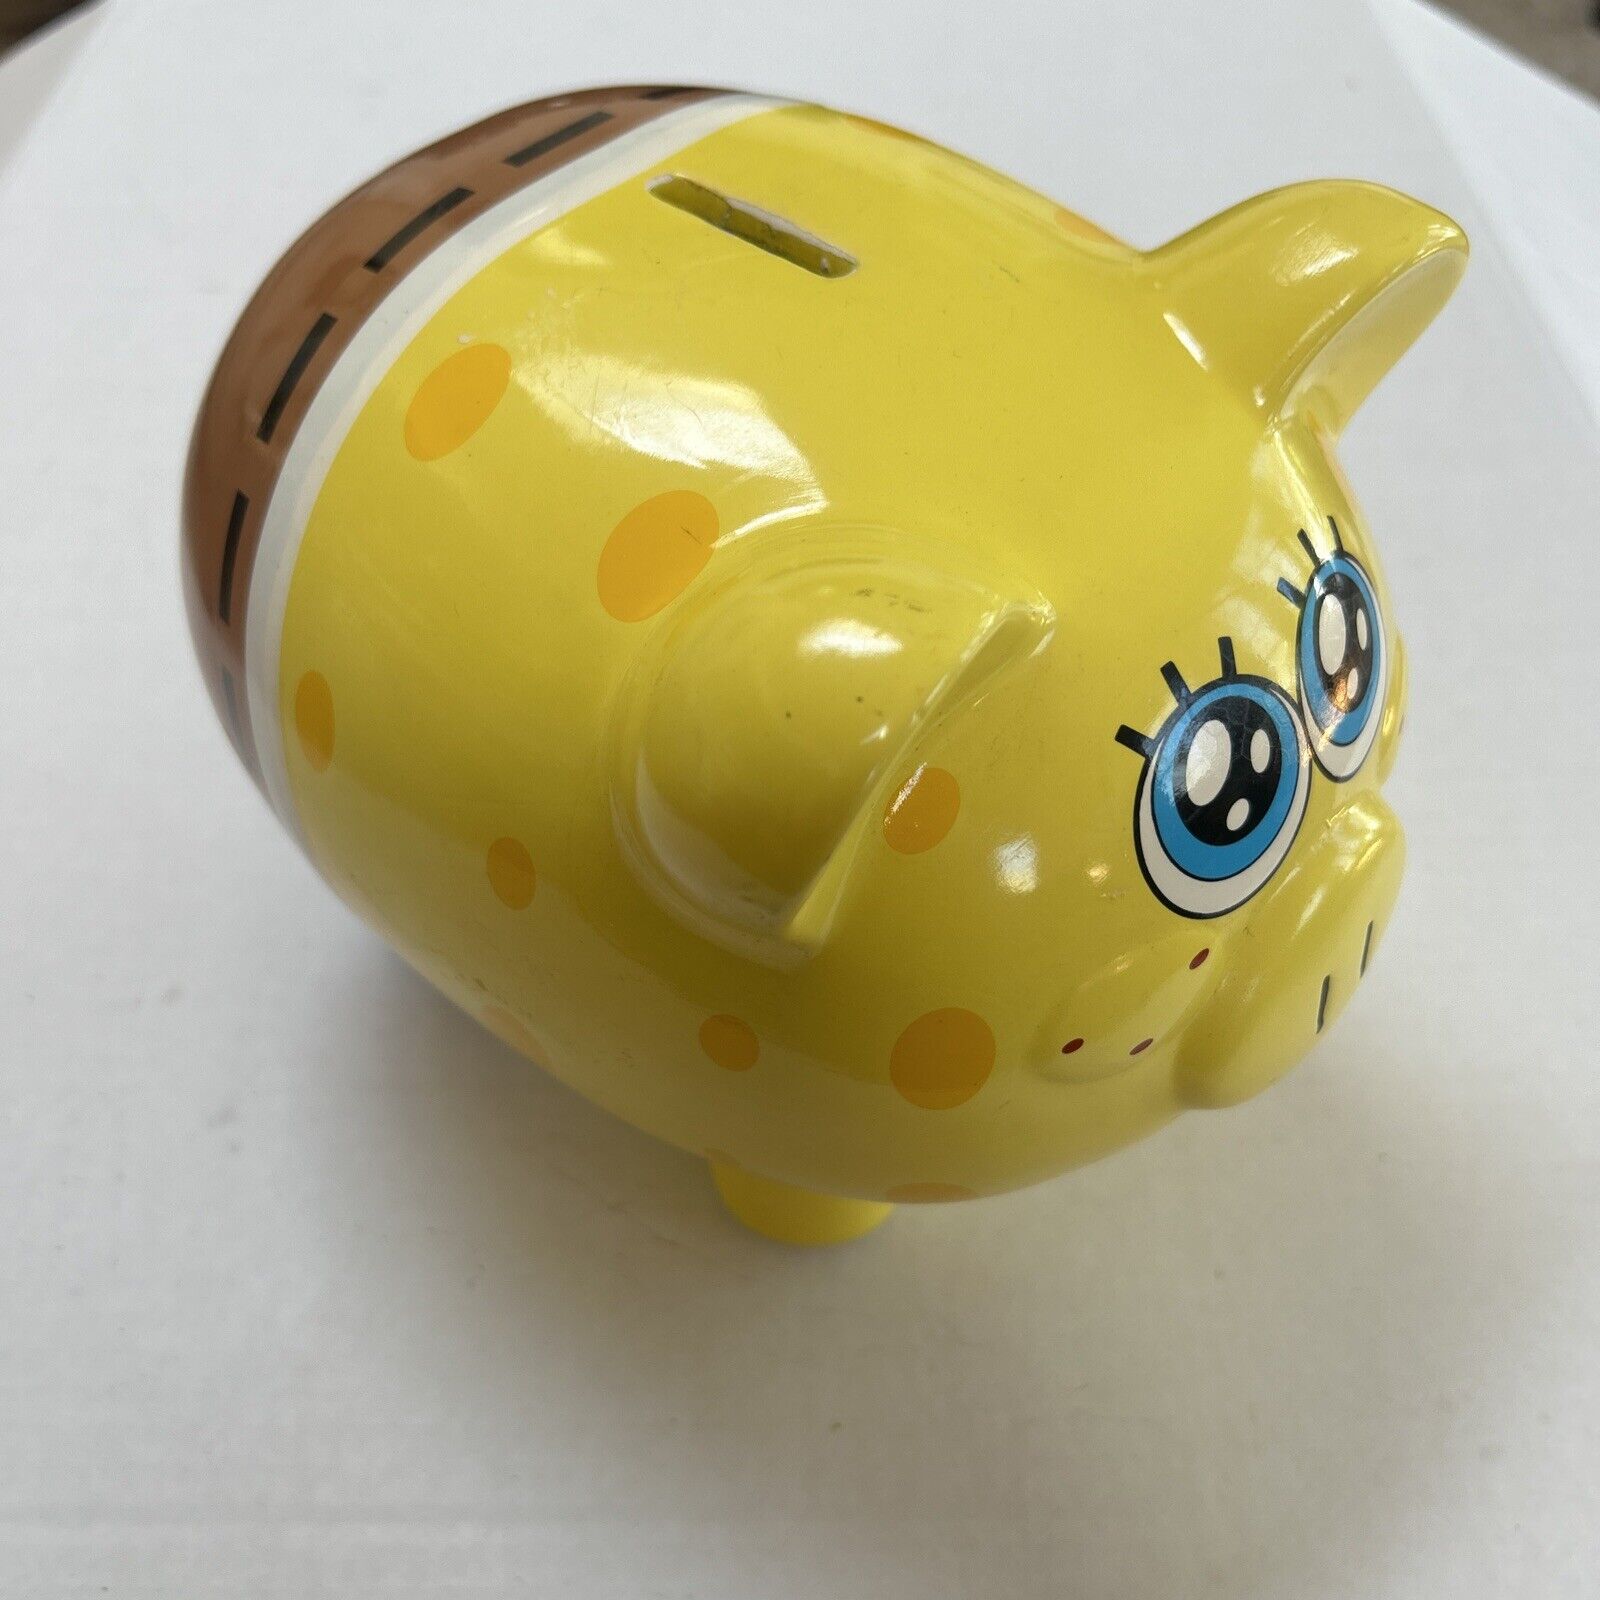 2012 Spongebob Squarepants - Ceramic Piggy Bank - Viacom International